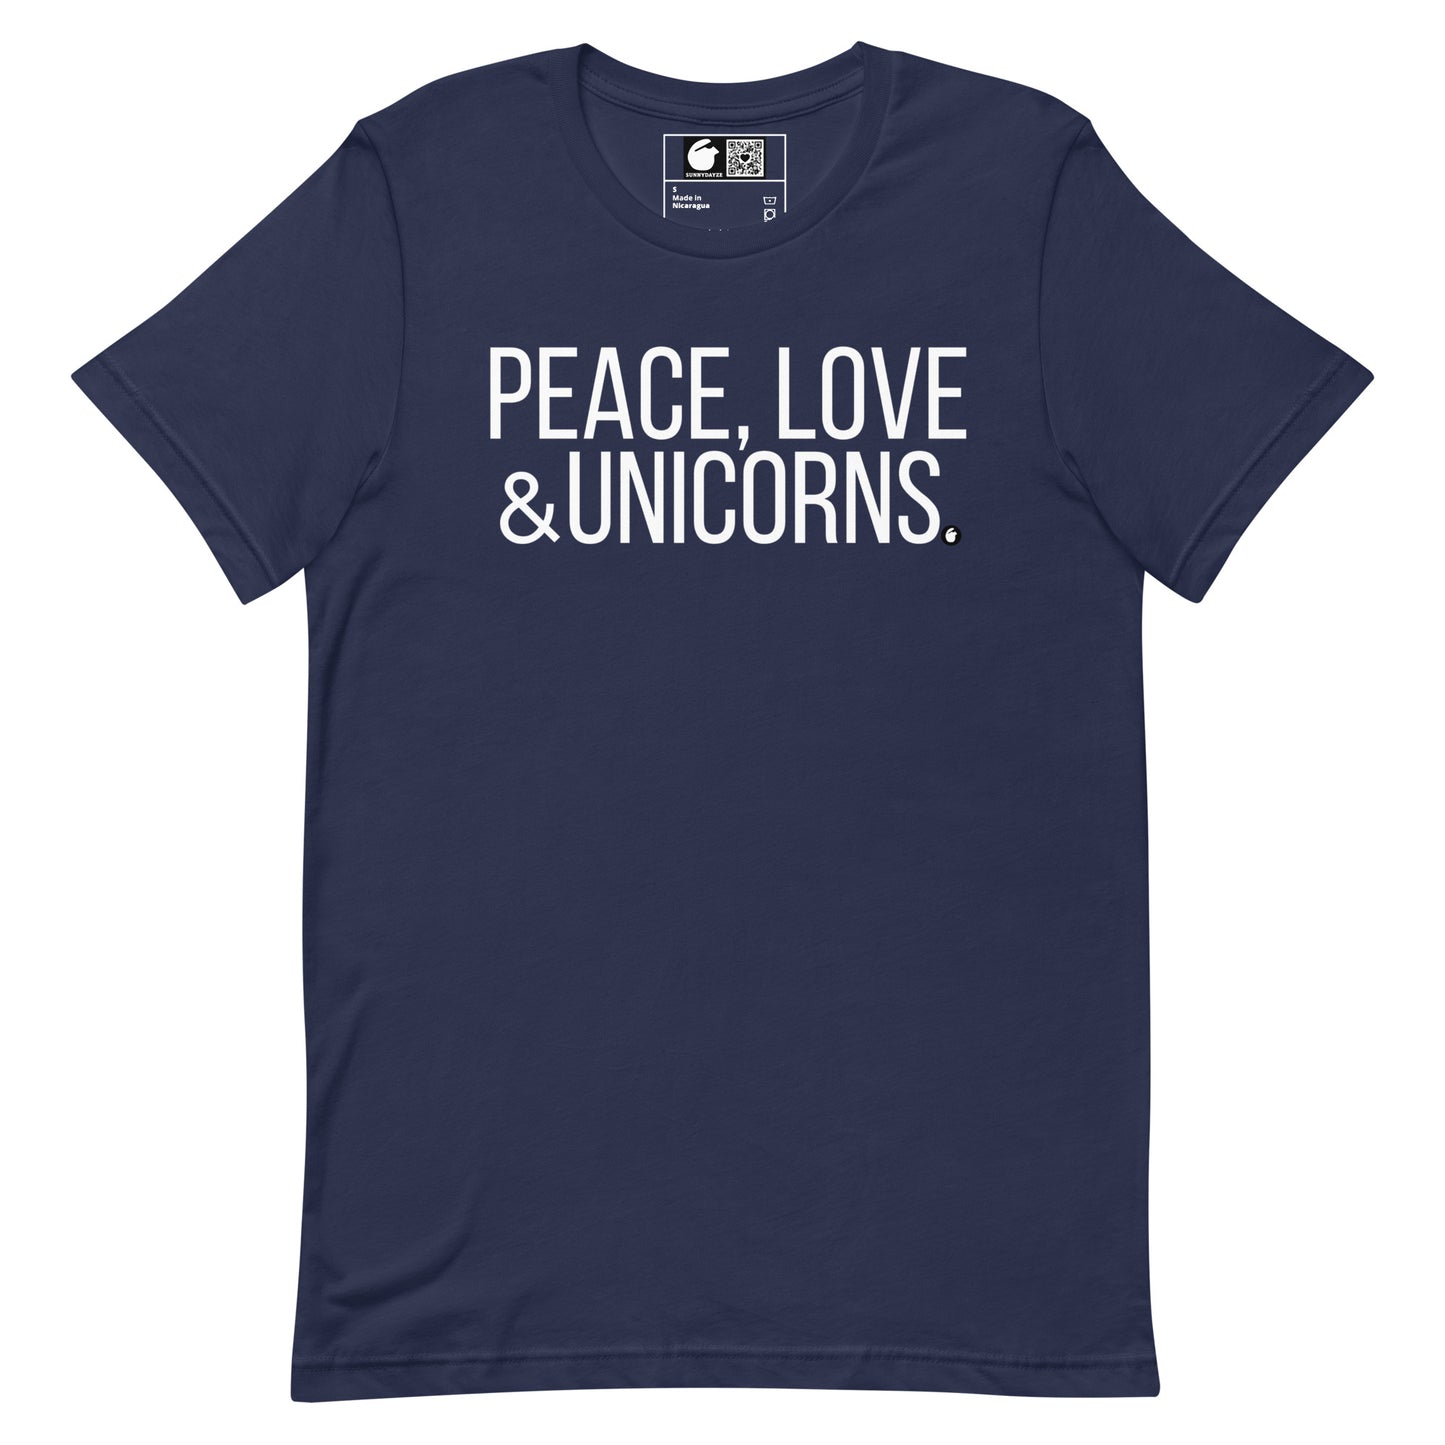 UNICORNS Short-Sleeve Unisex t-shirt